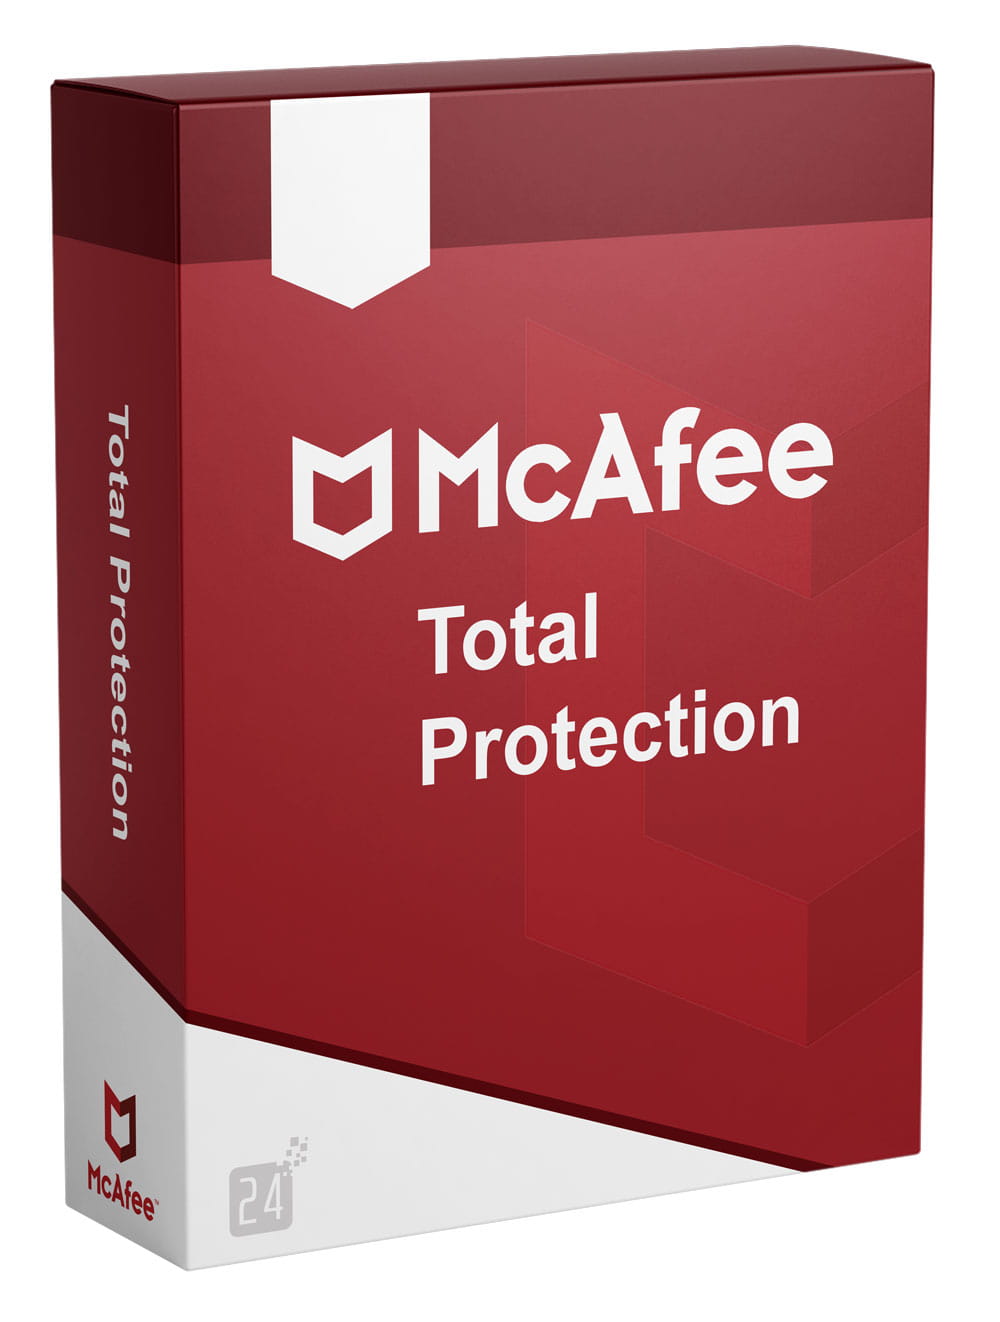 McAfee Protección Total